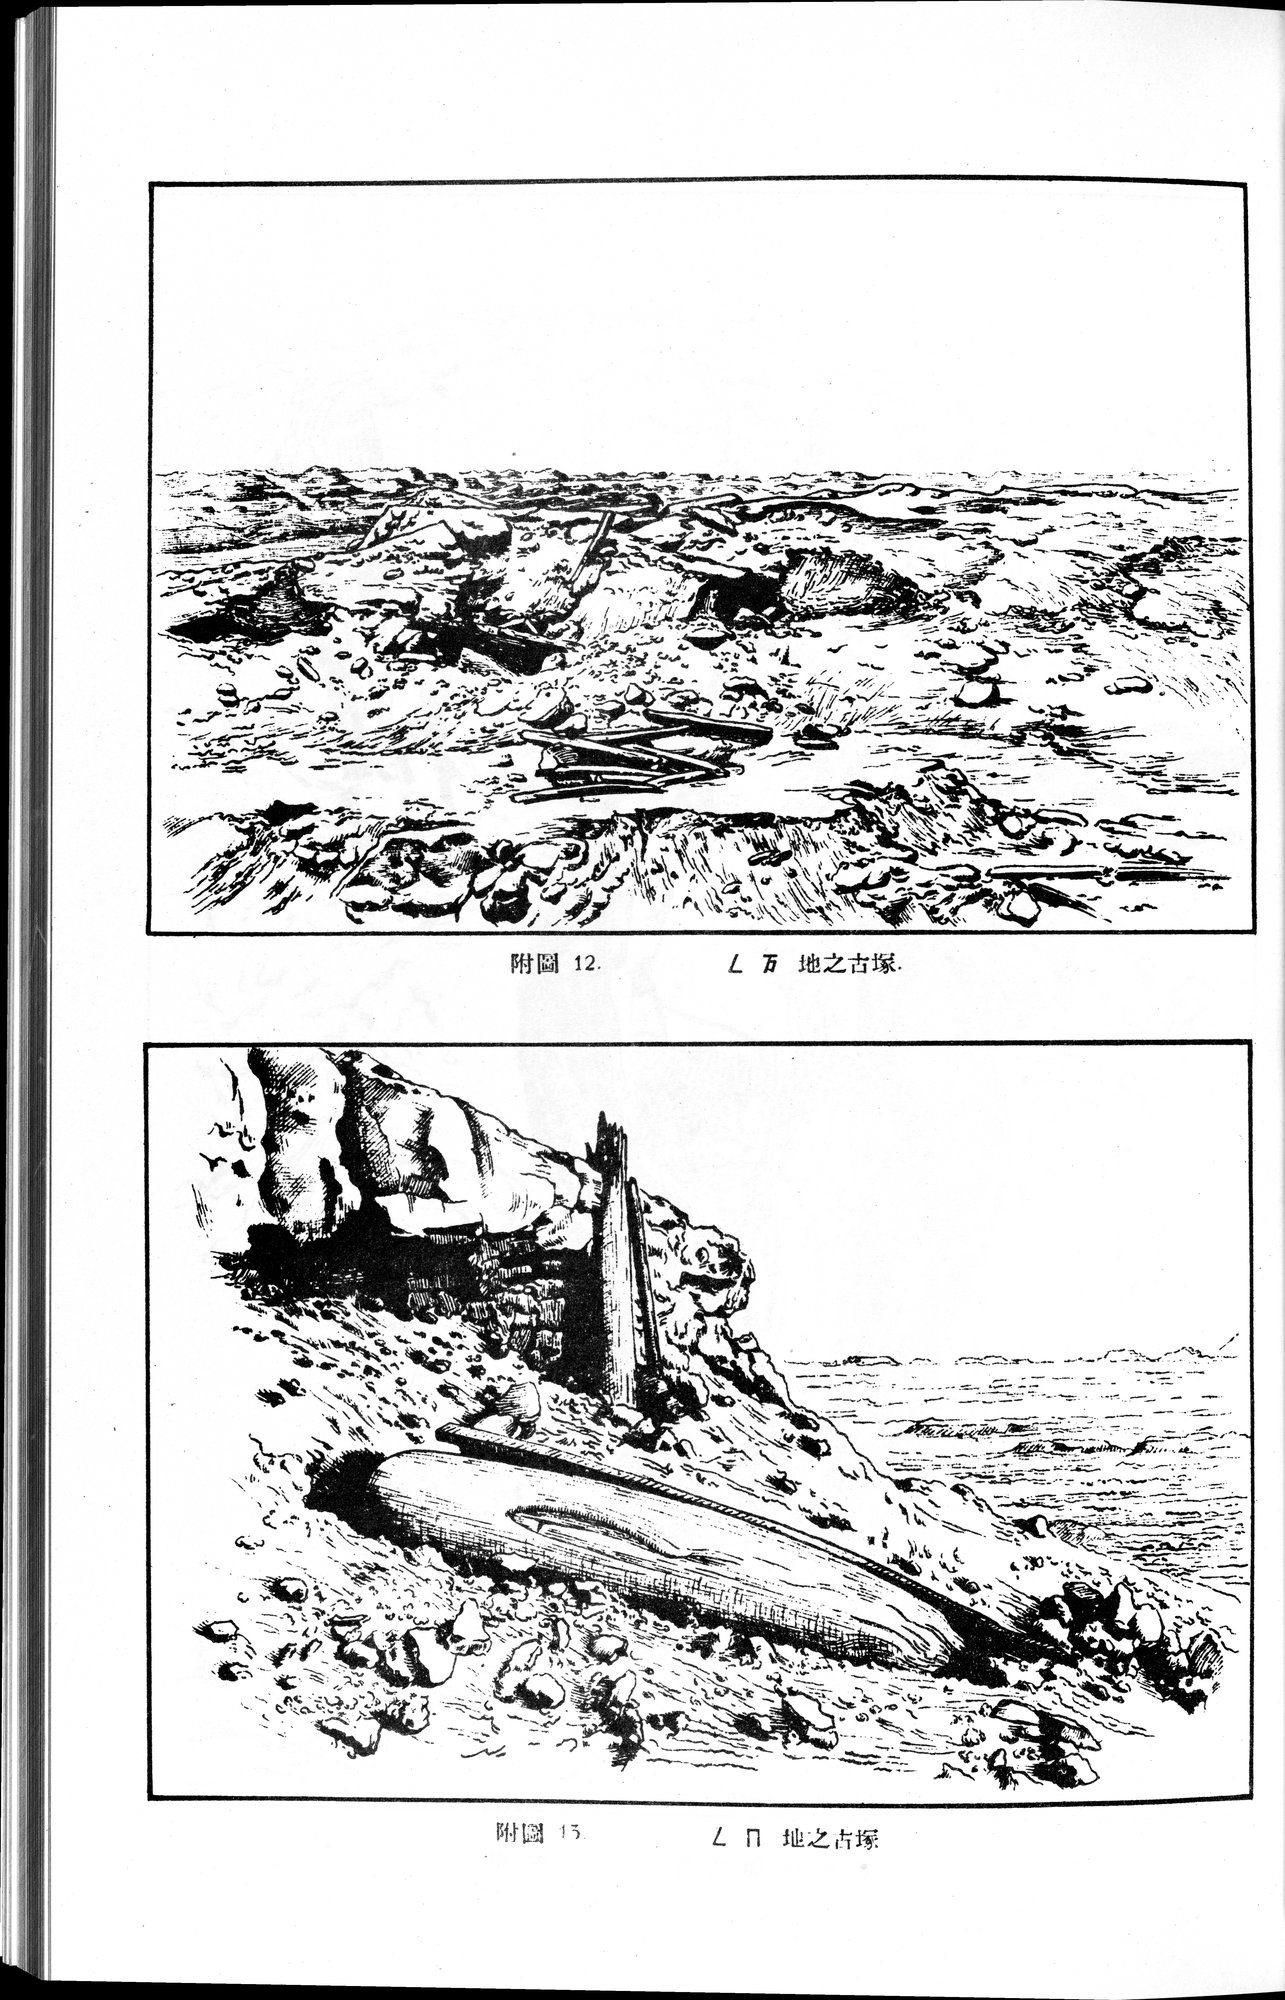 羅布淖爾考古記 : vol.1 / Page 141 (Grayscale High Resolution Image)